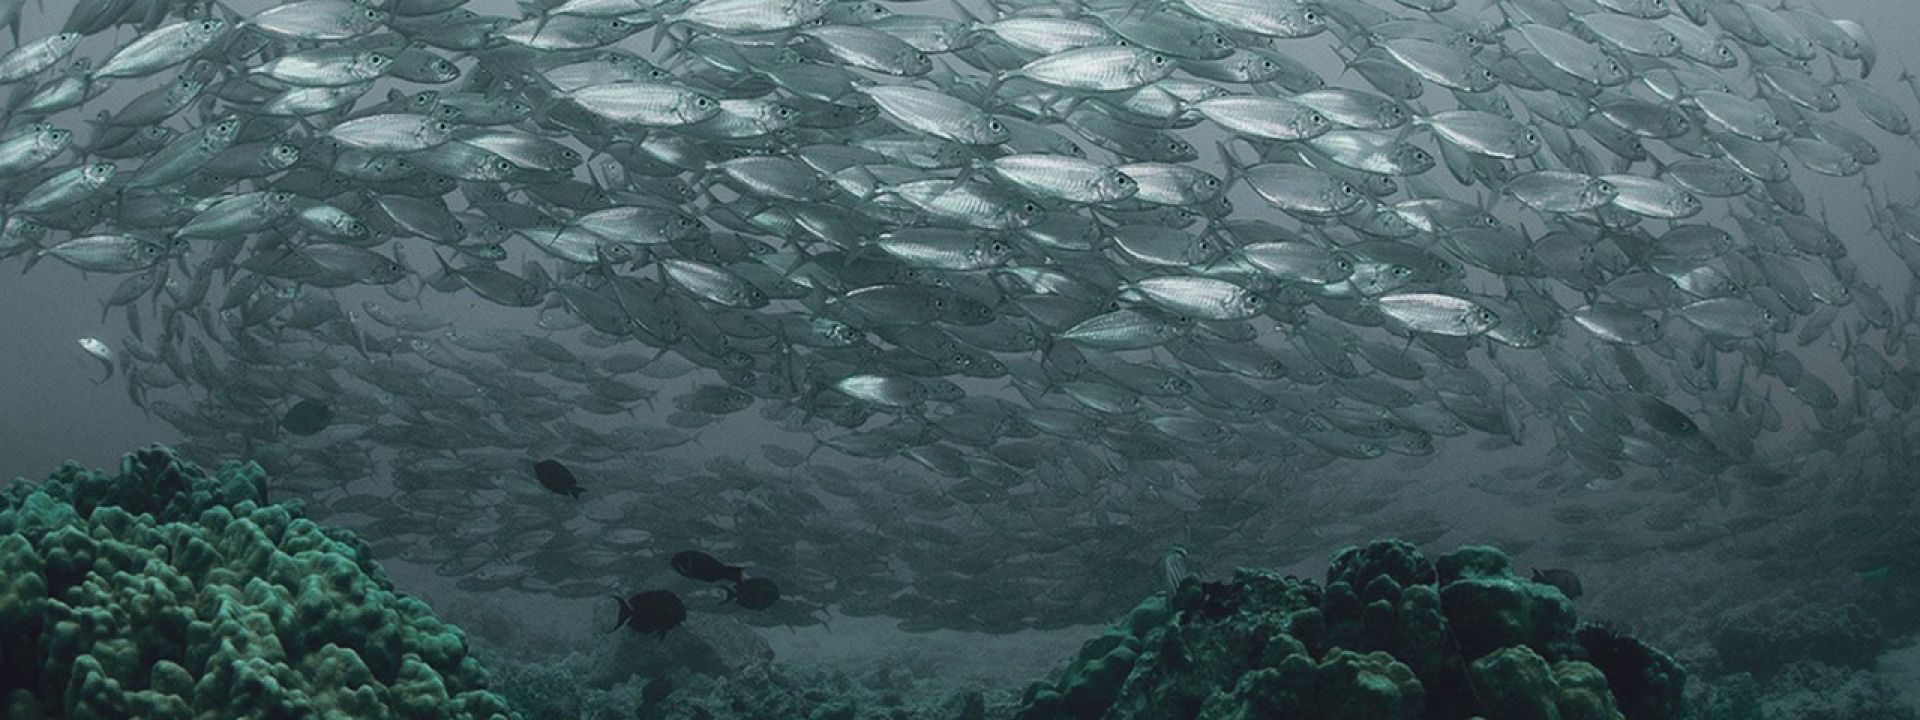 Φωτογραφία που απεικονίζει ένα δίχτυ με ψάρια μέσα στον βυθό